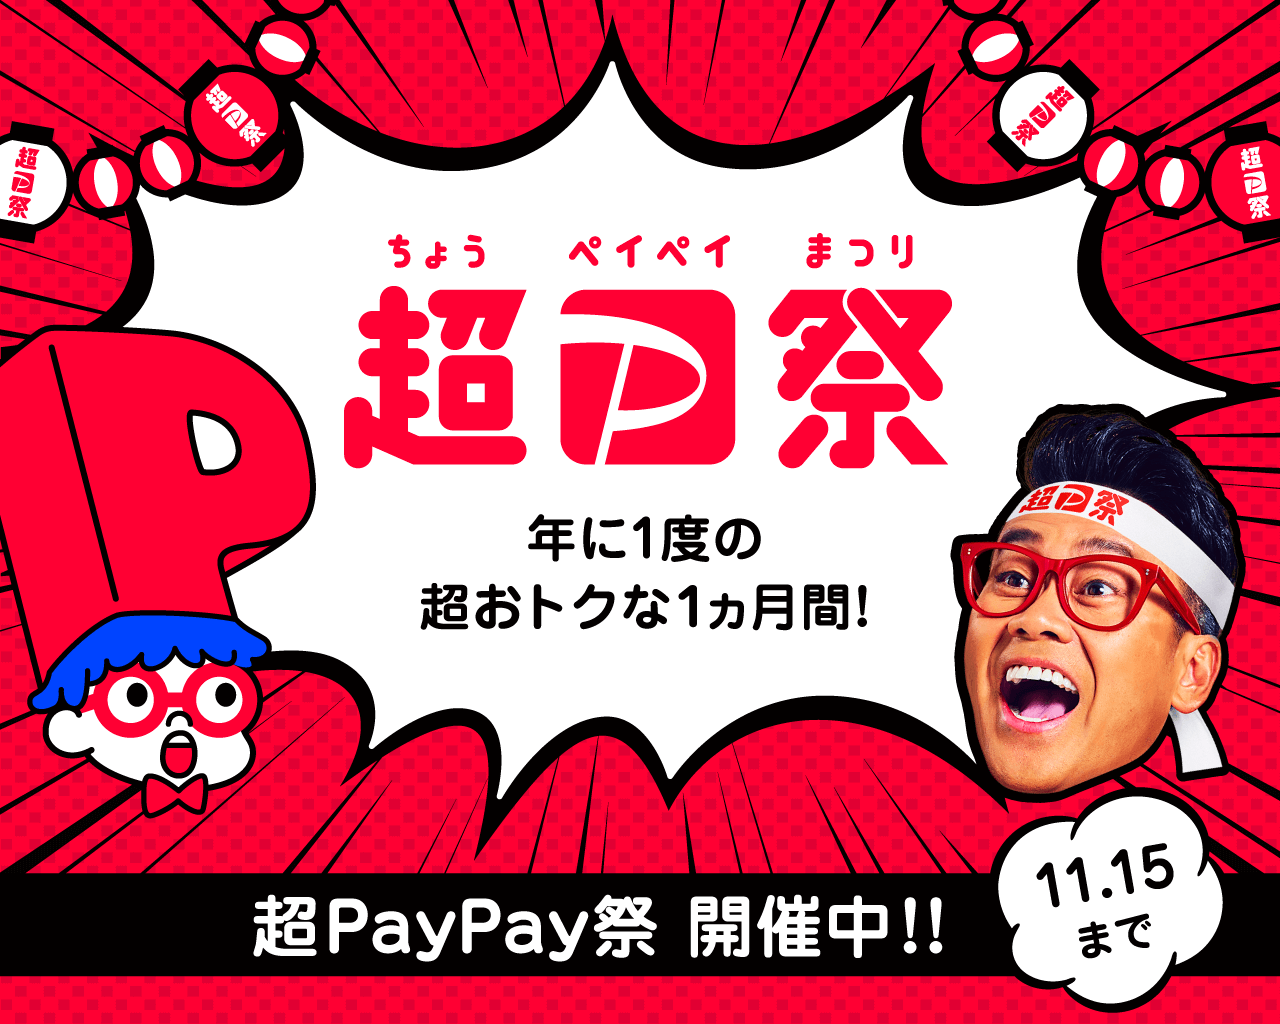 超PayPay祭り開催中